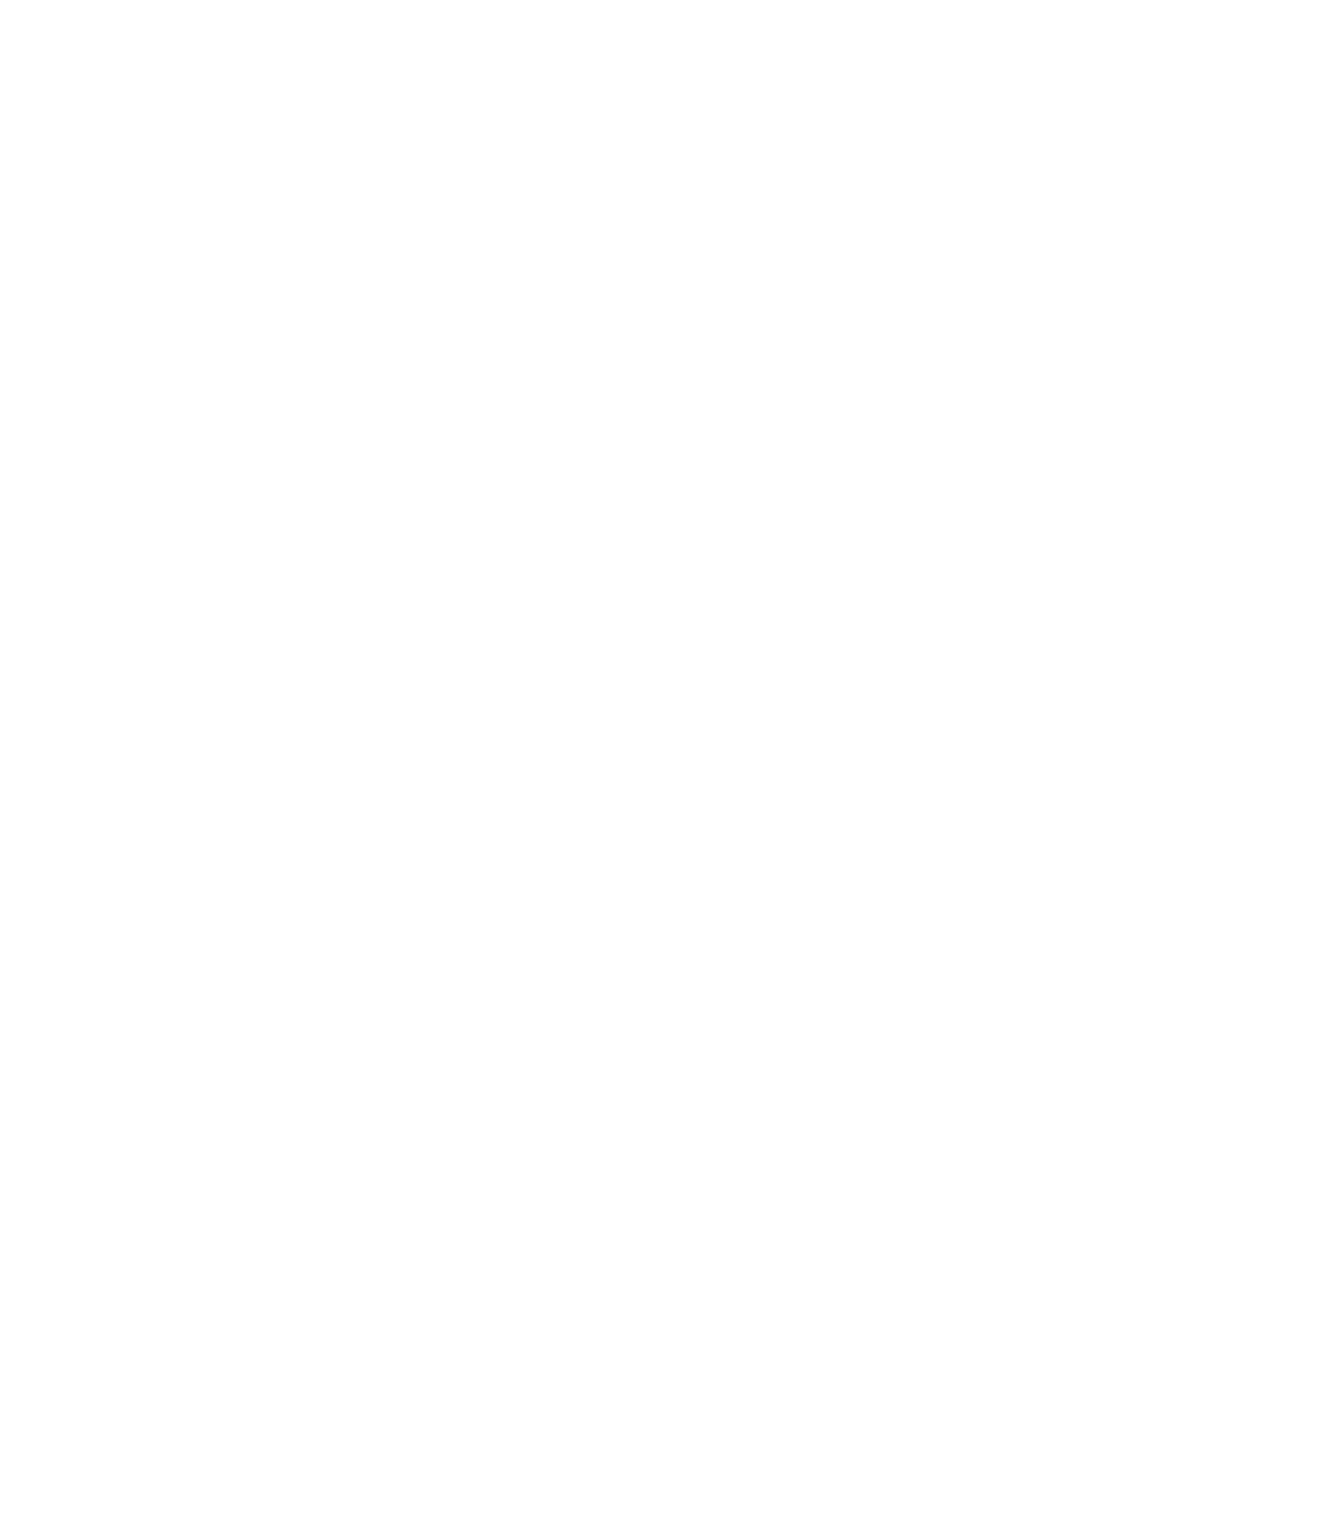 Sanlam logo pour fonds sombres (PNG transparent)